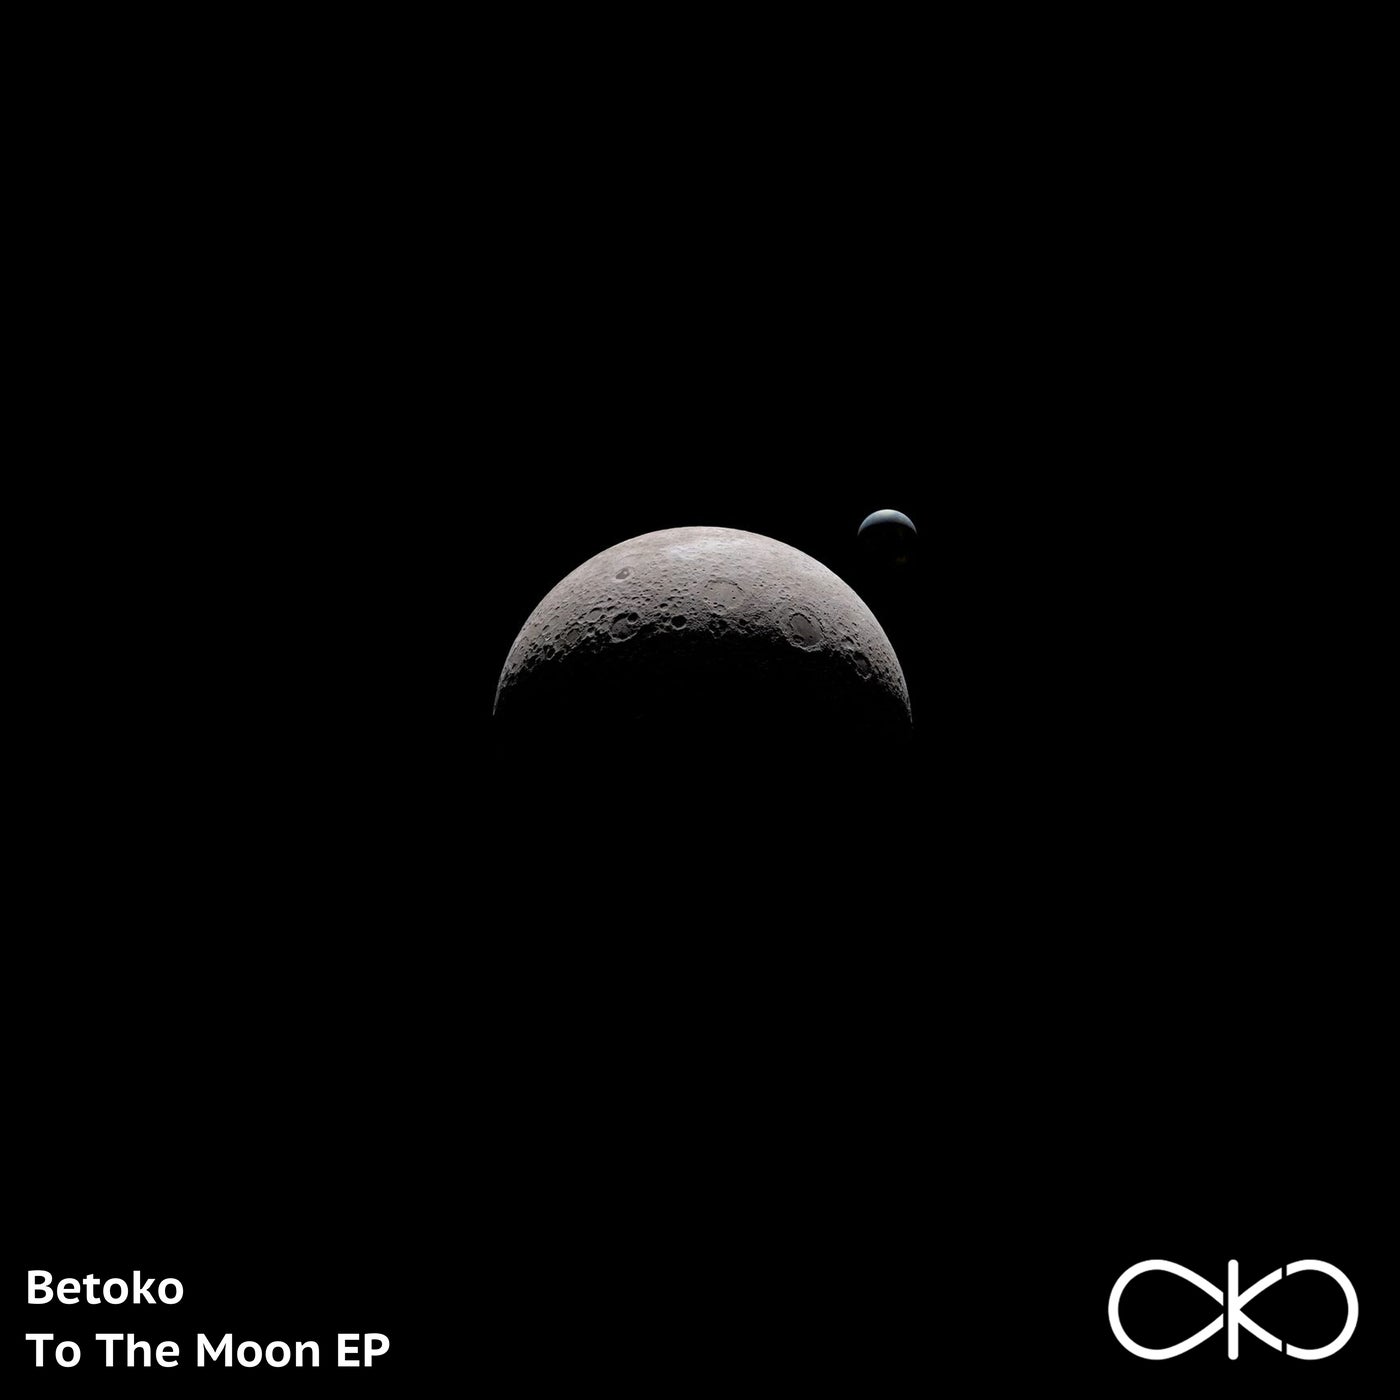 Betoko - To The Moon EP [OKO064]